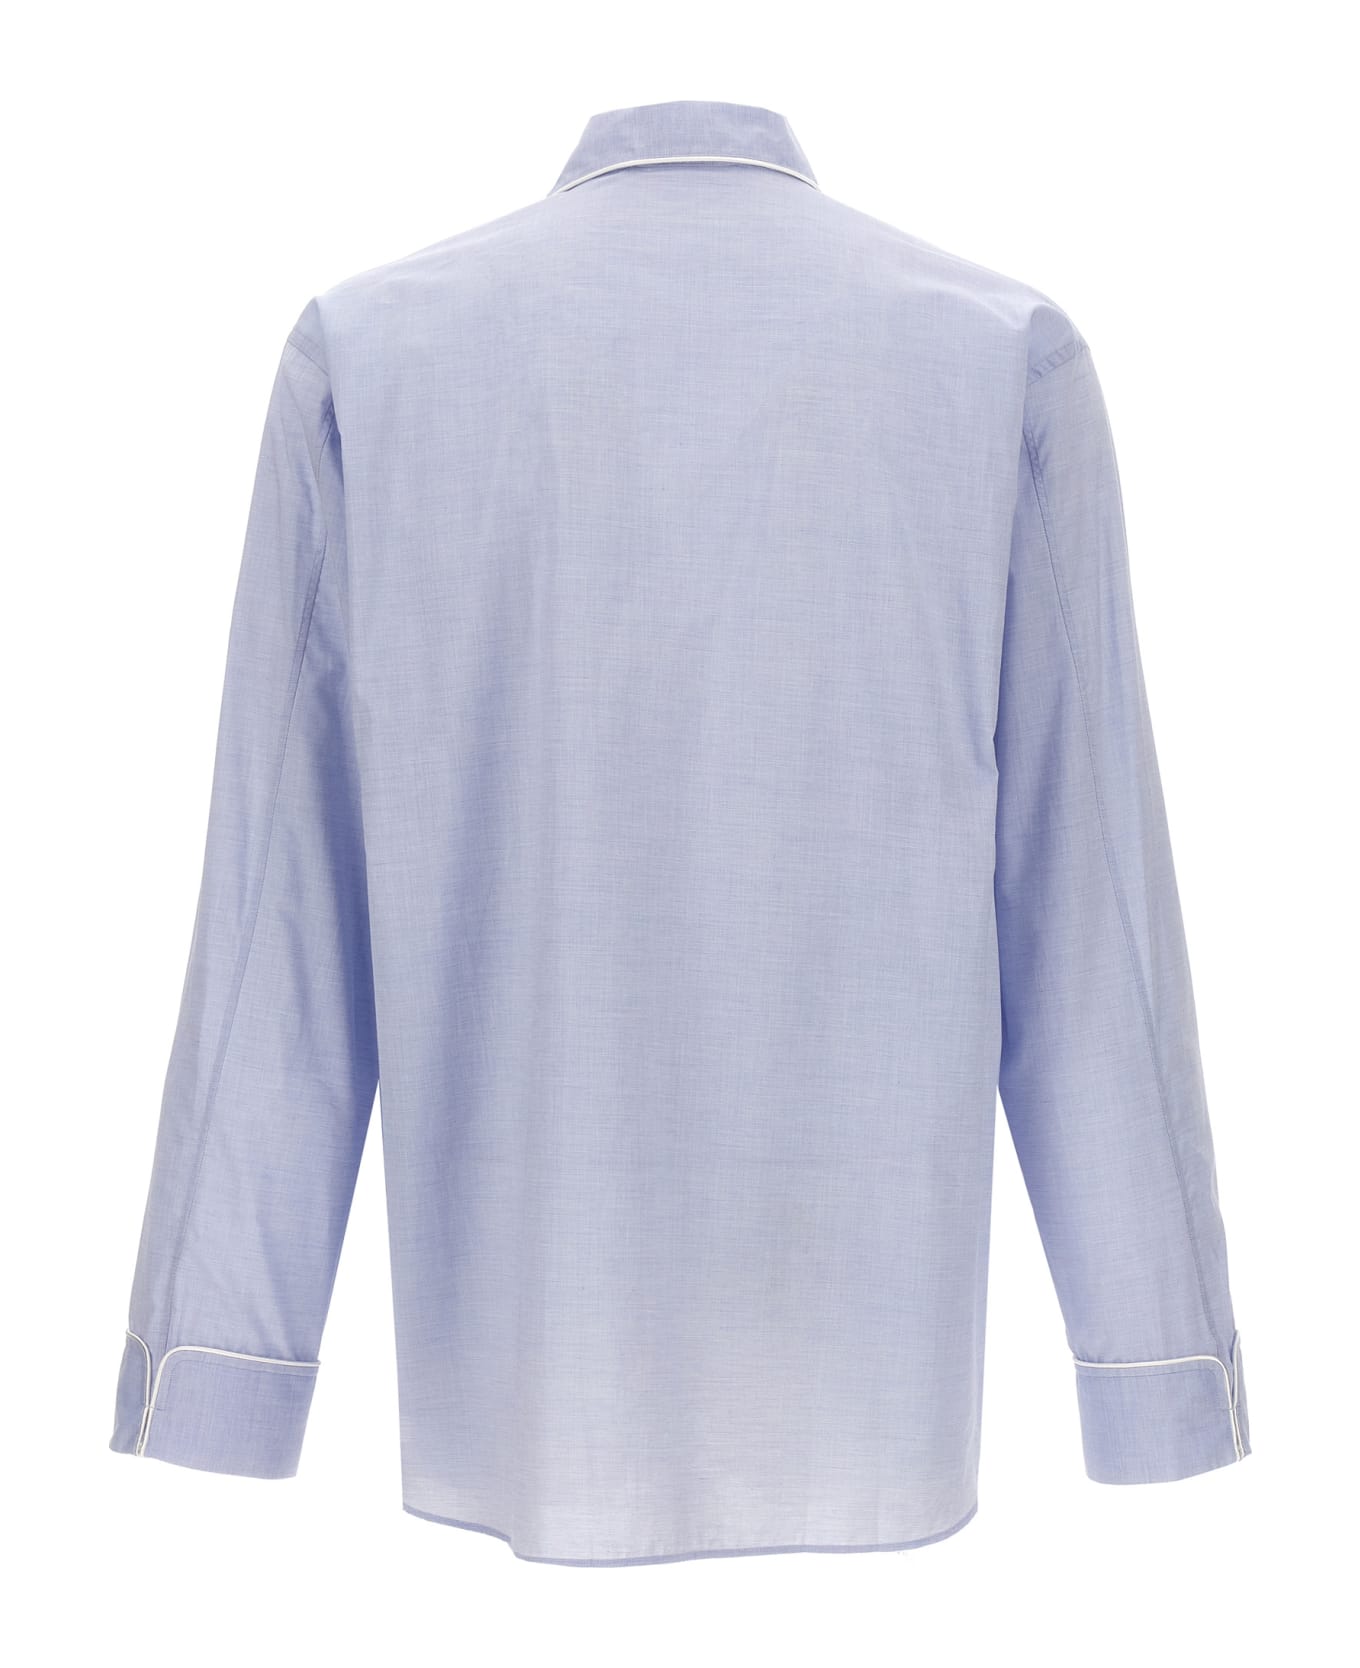 Wales Bonner 'market' Shirt - 500 LIGHT BLUE シャツ